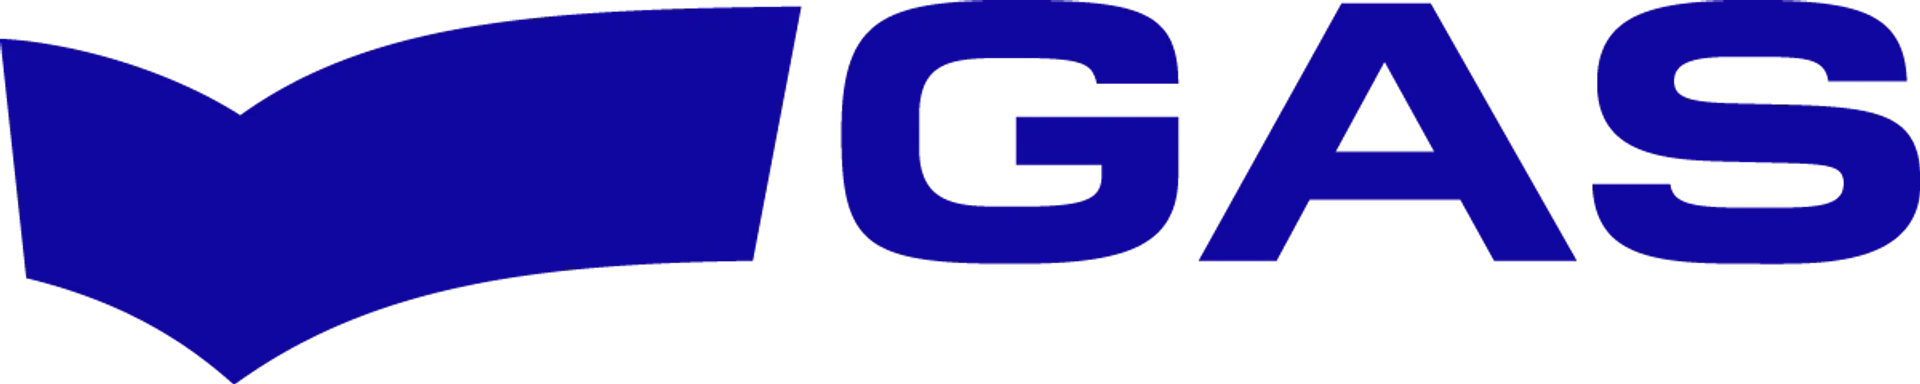 GAS JEANS logo du catalogue